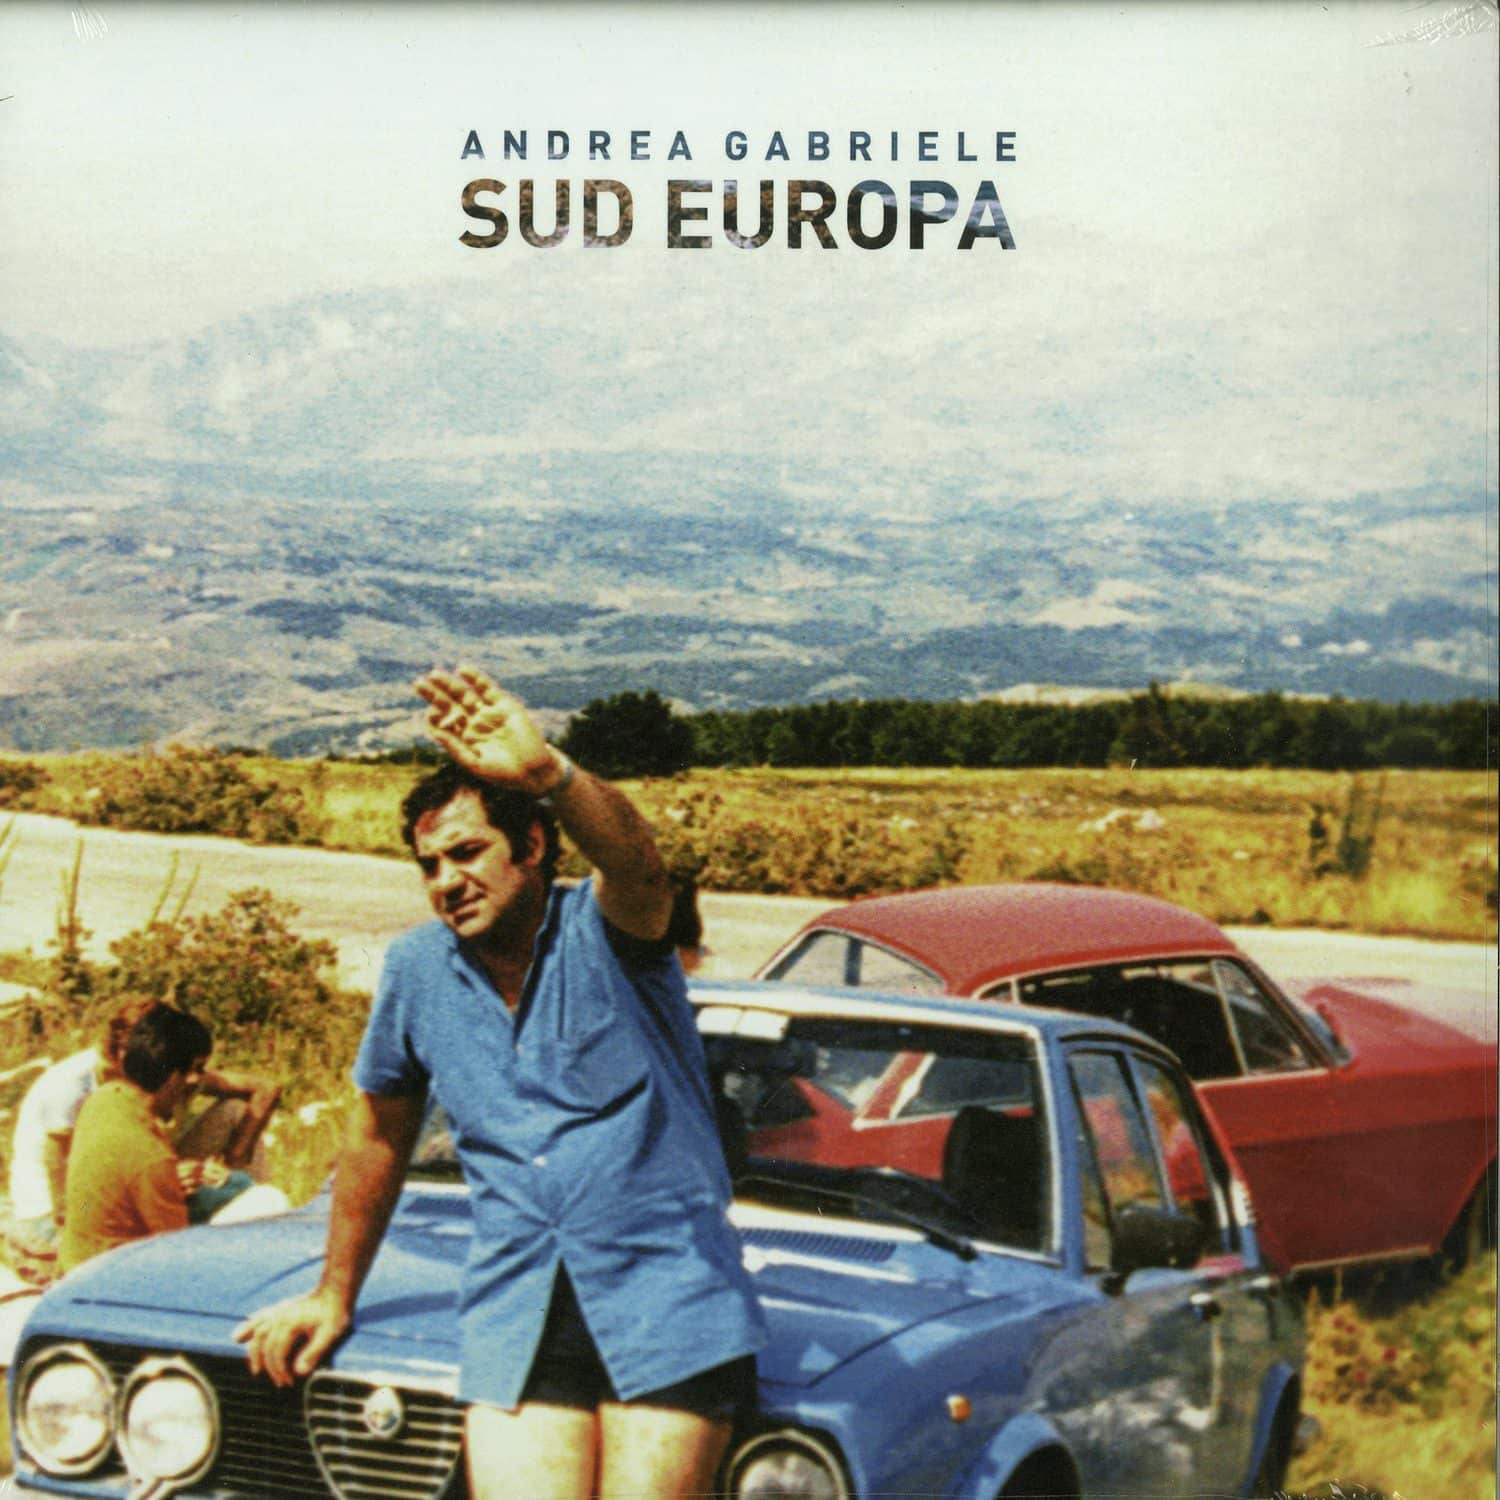 Andrea Gabriele - SUD EUROPA